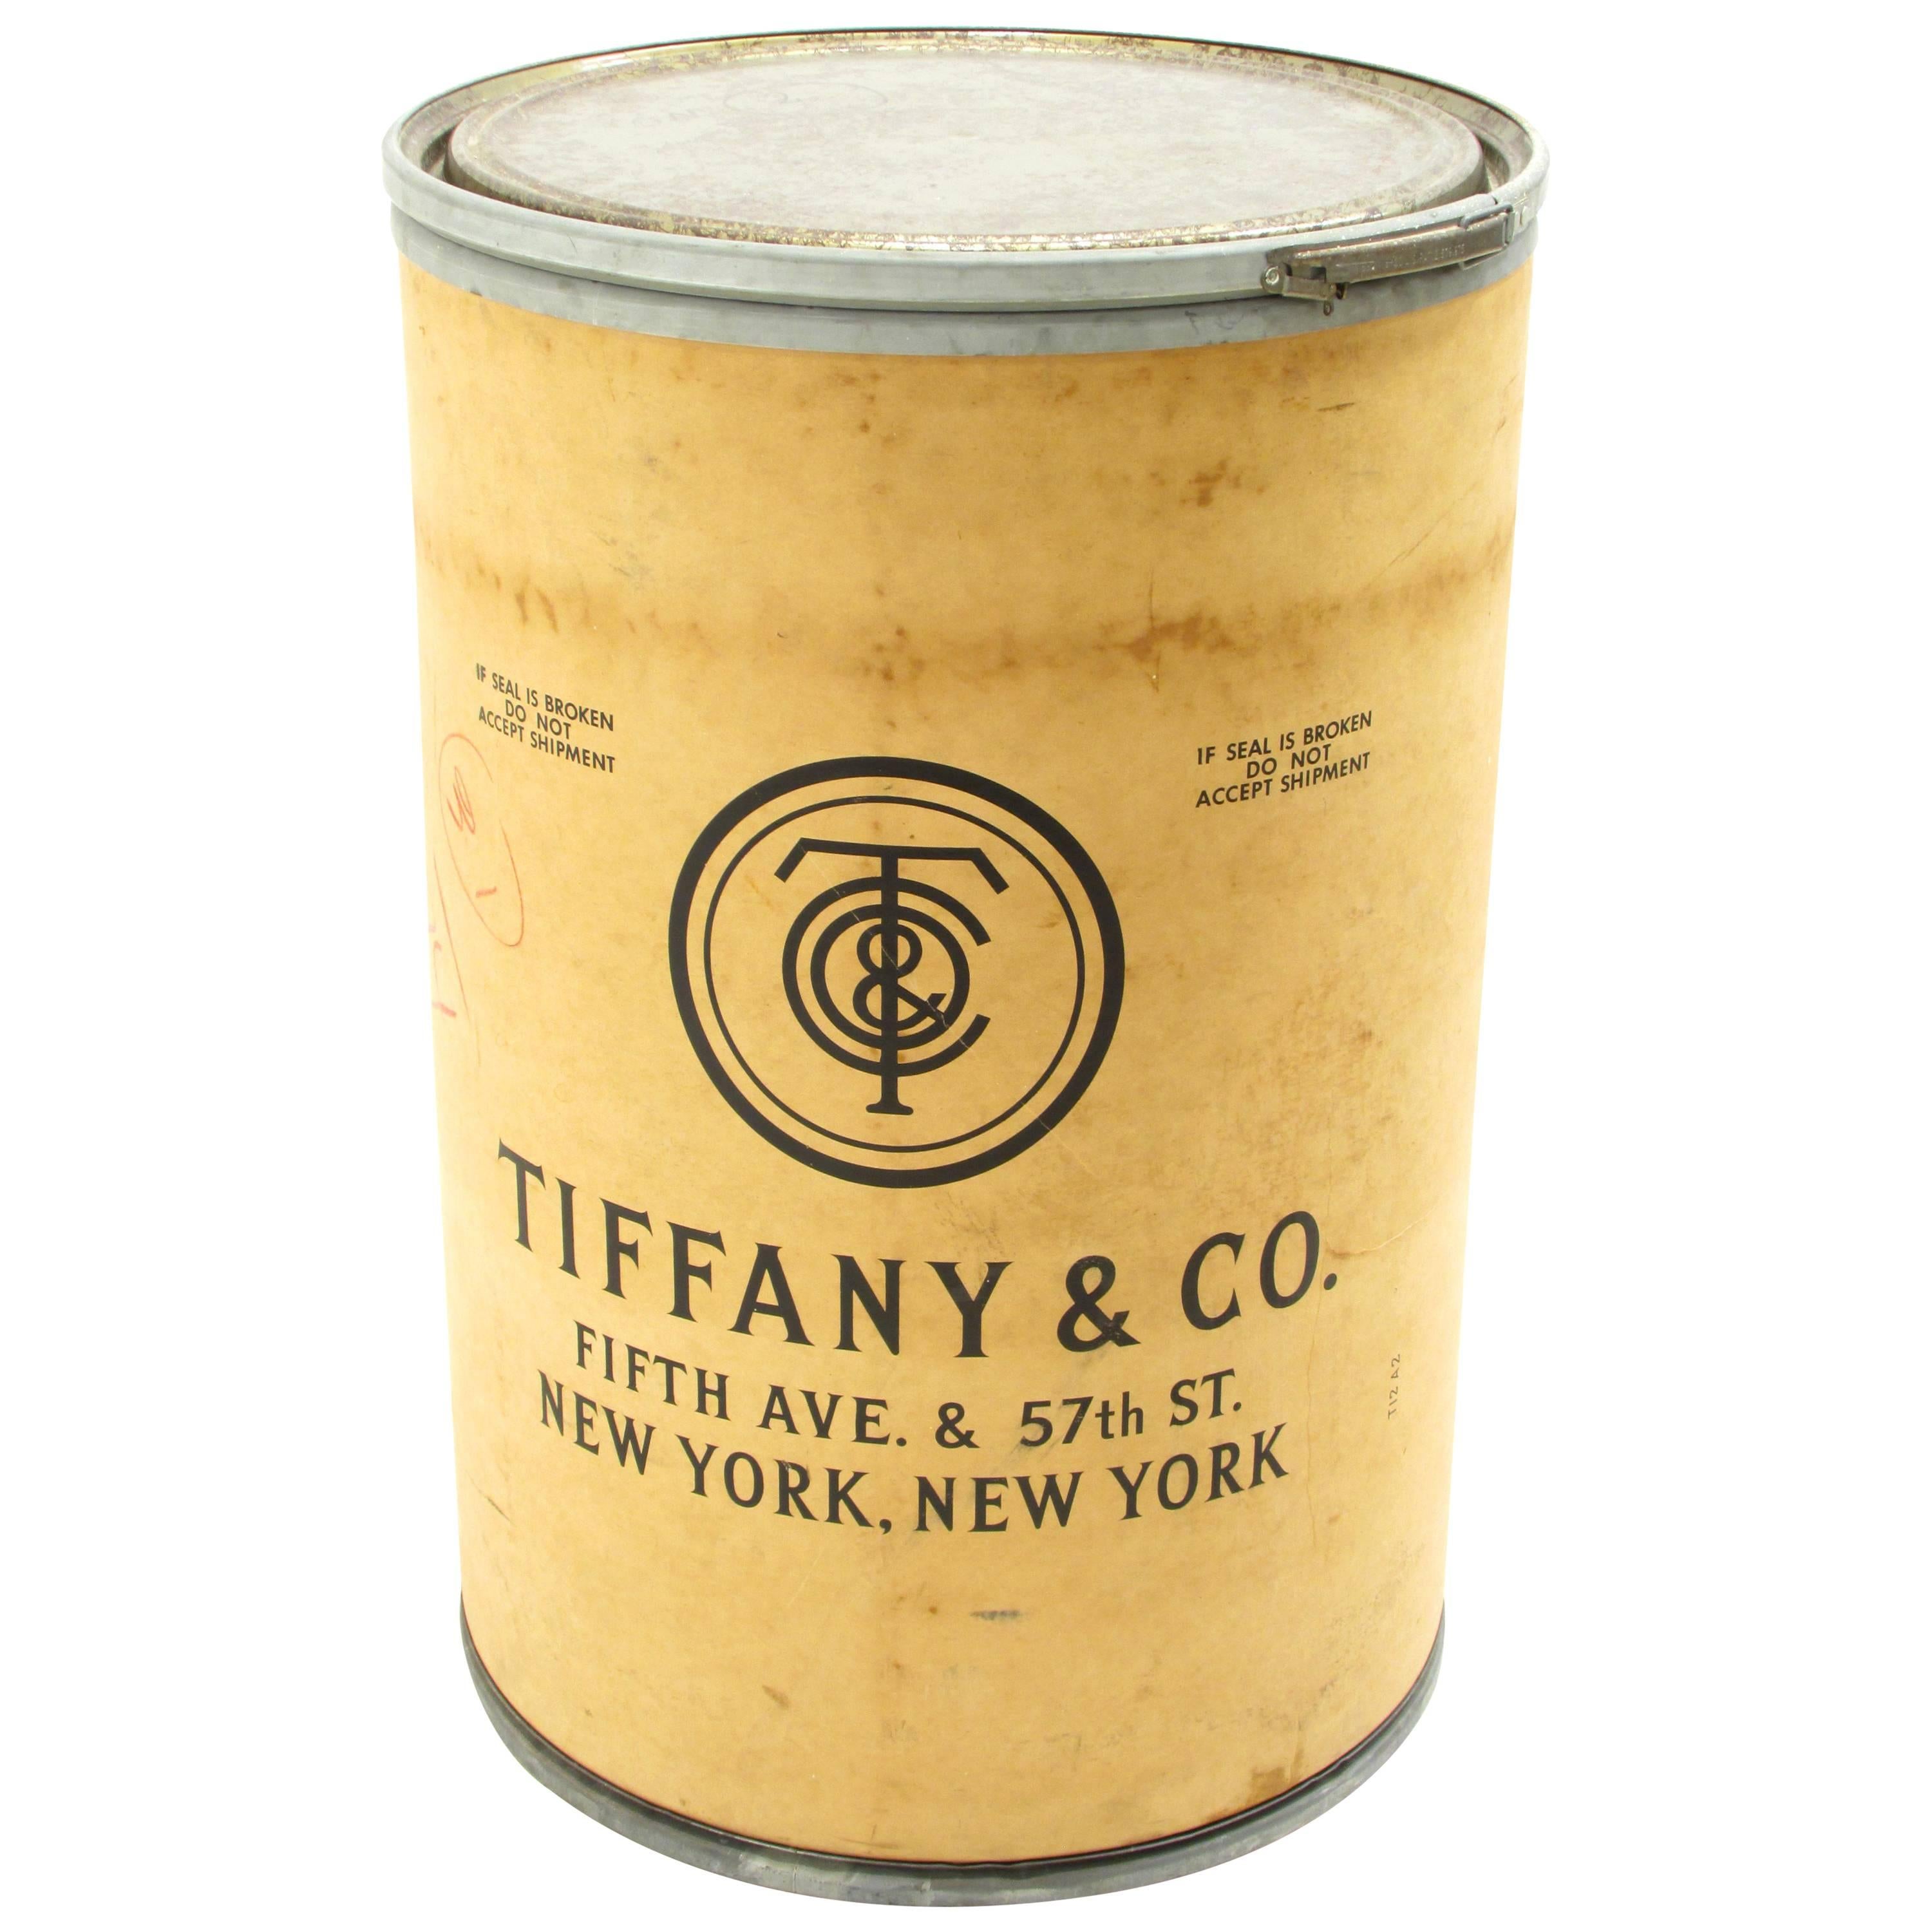 Tiffany & Company Shipping Barrel